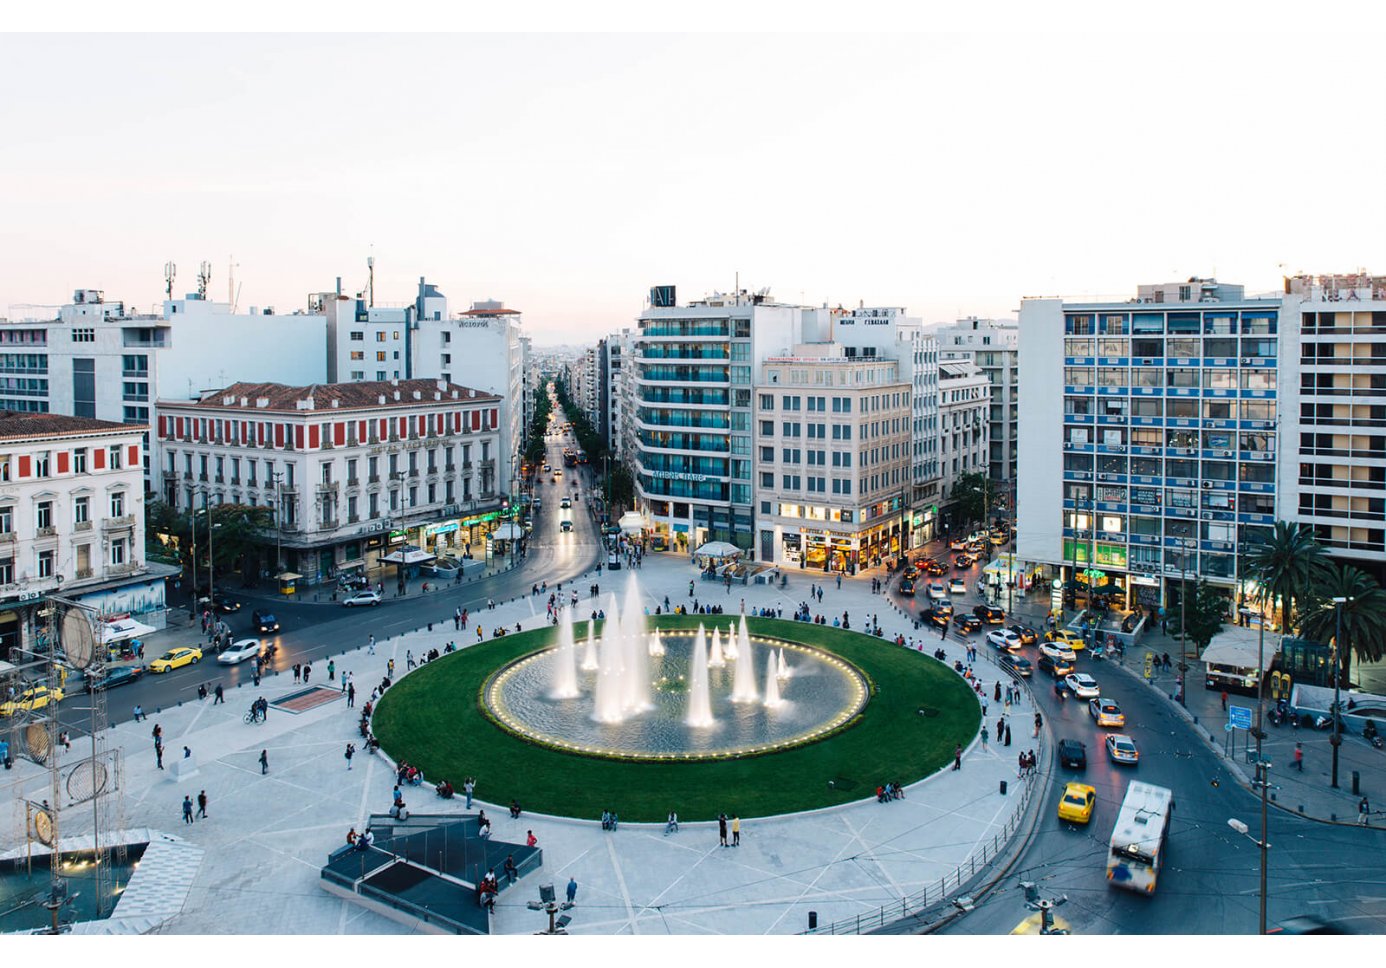 Omonia Square in Athens